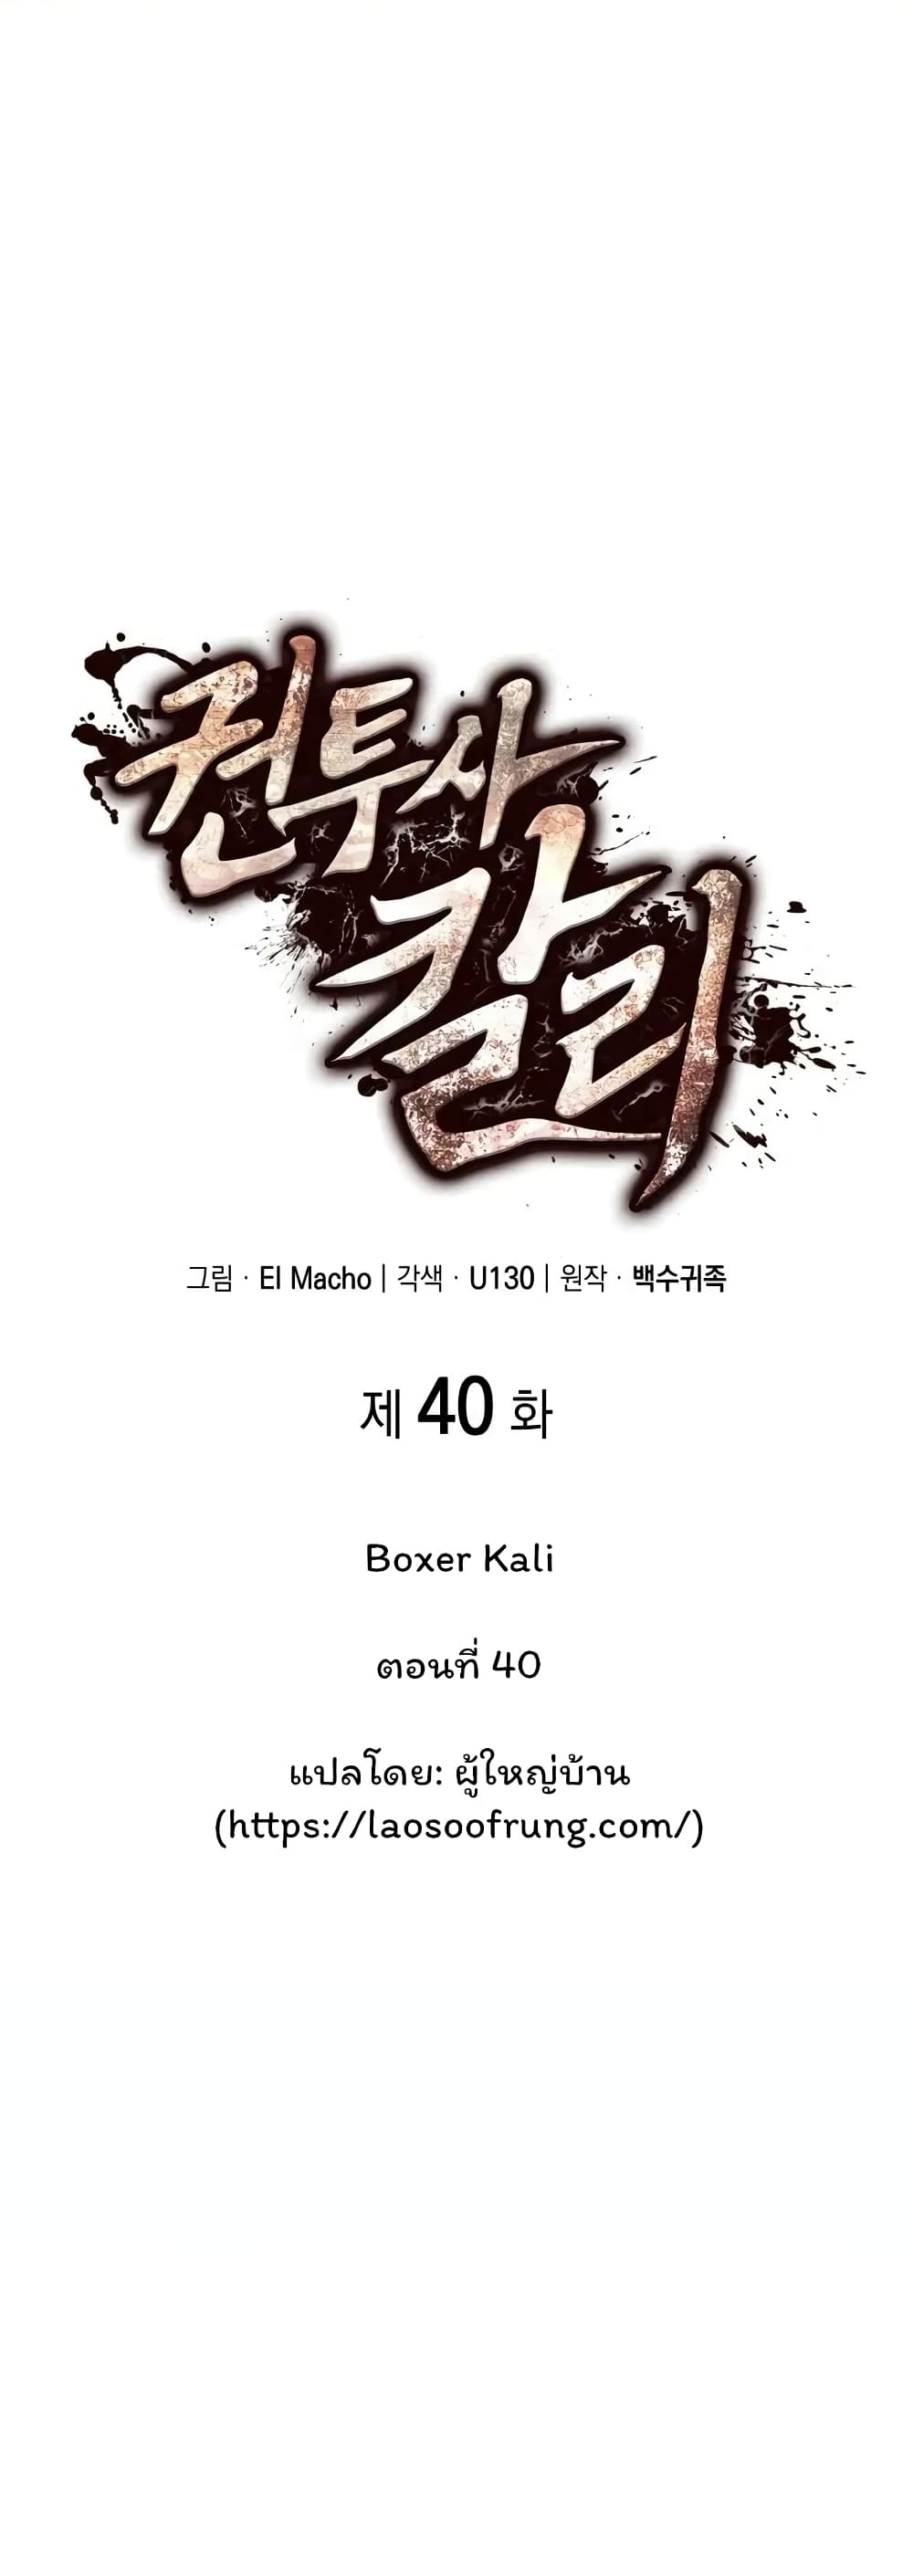 Boxer Kali 40 01